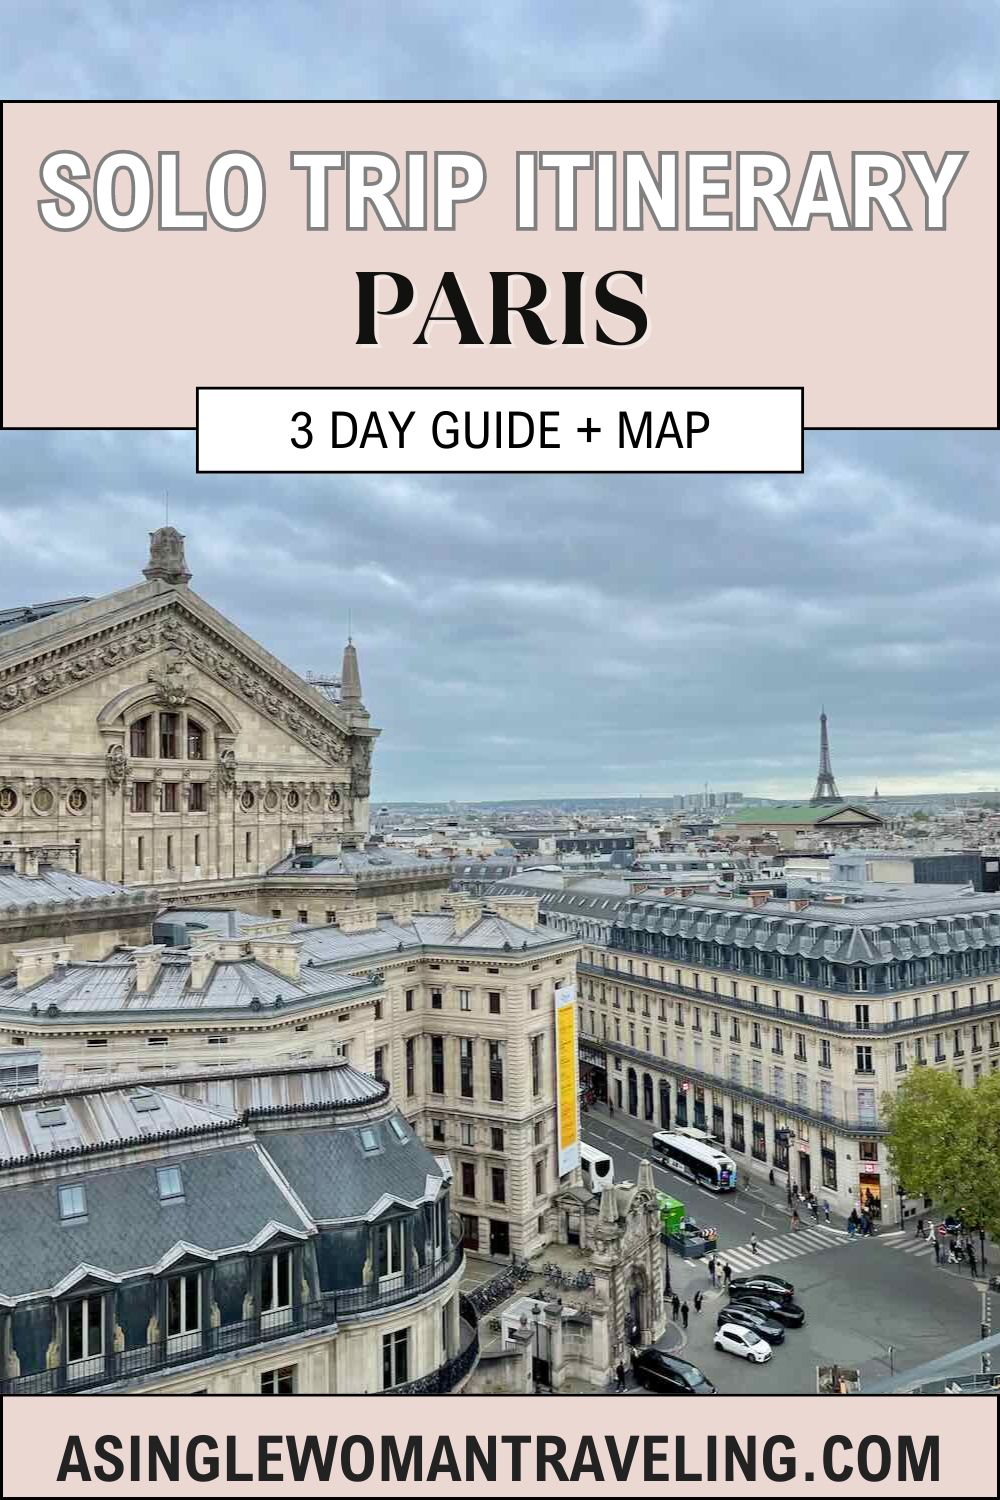 Pinterest imagine promoting solo trip to Paris.